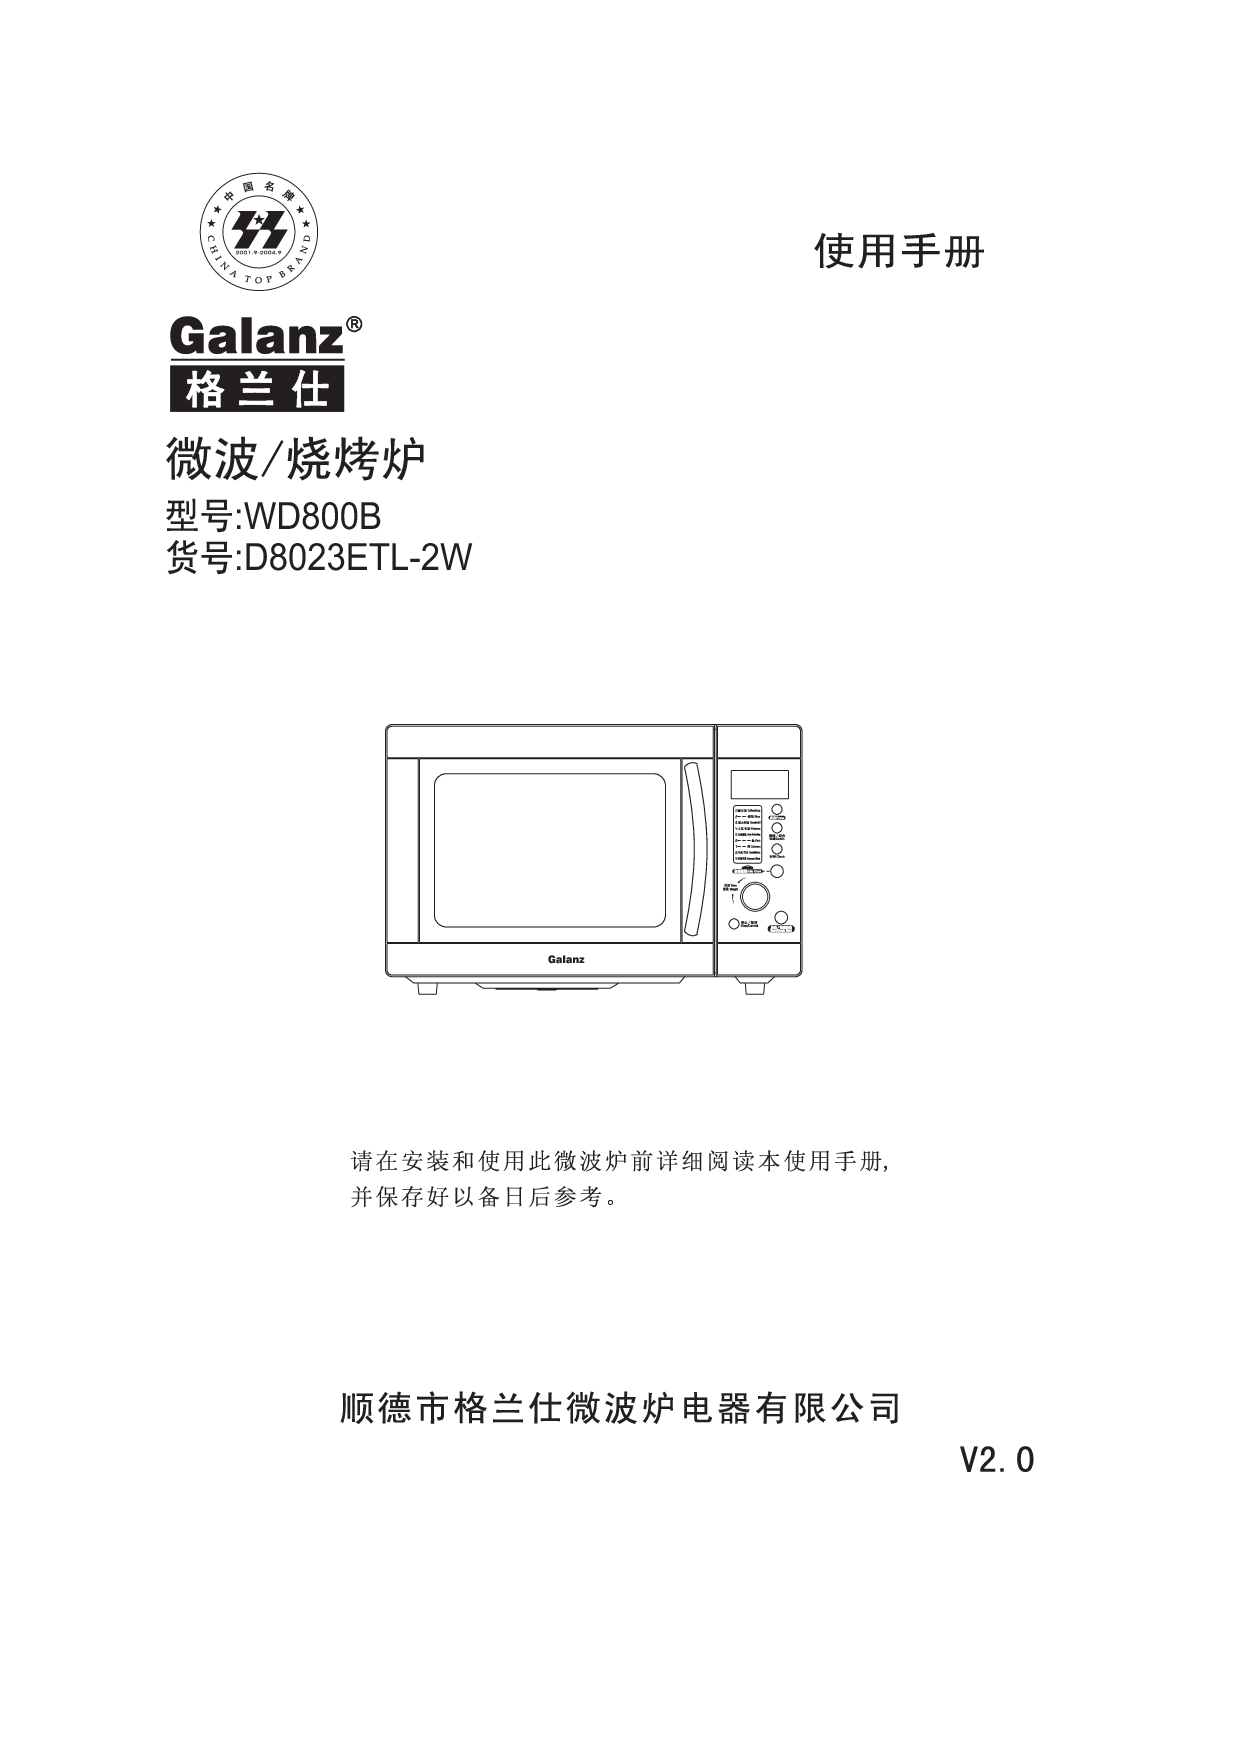 格兰仕 Galanz D8023ETL-2W 使用手册 封面